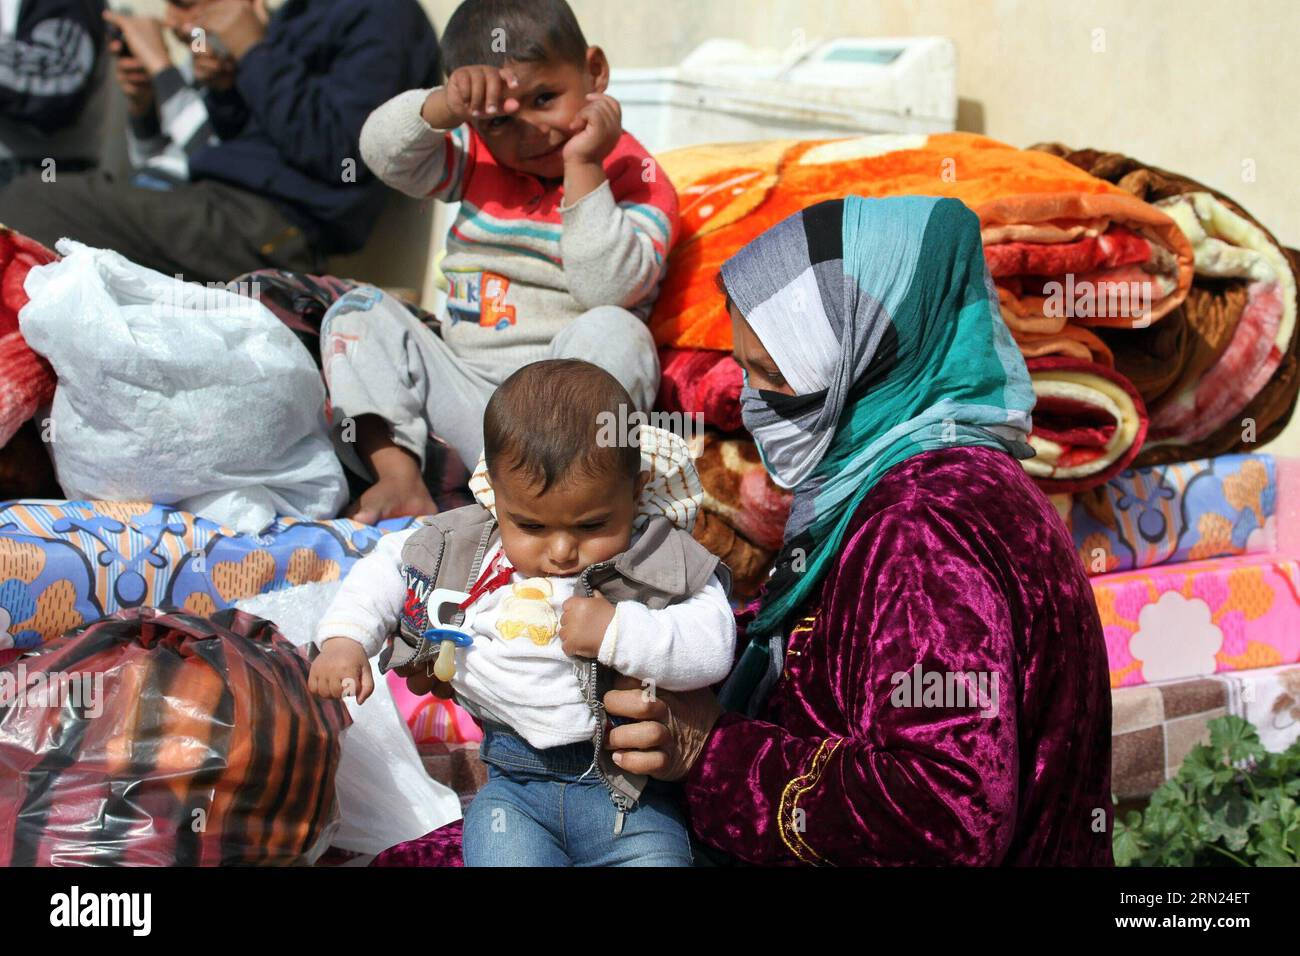 (150207) -- ERBIL, 07 de febrero de 2015 -- Una familia de refugiados es vista fuera de su casa improvisada en Erbil, la capital de la región kurda iraquí, el 7 de febrero de 2015. Muchos iraquíes huyeron de Mosul en el norte de Irak después de que los militantes del Estado Islámico tomaron la ciudad y tomaron instalaciones públicas en las afueras de Erbil como sus hogares temporales. IRAK-ERBIL-DESPLAZADO YaserxJawad PUBLICATIONxNOTxINxCHN Erbil Feb 07 2015 Una familia de refugiados son lagos fuera de su casa improvisada en Erbil la ciudad capital de la región kurda iraquí EL 7 2015 de febrero Muchas celebridades iraquíes fuera del norte de Irak S Mosul Afte Foto de stock